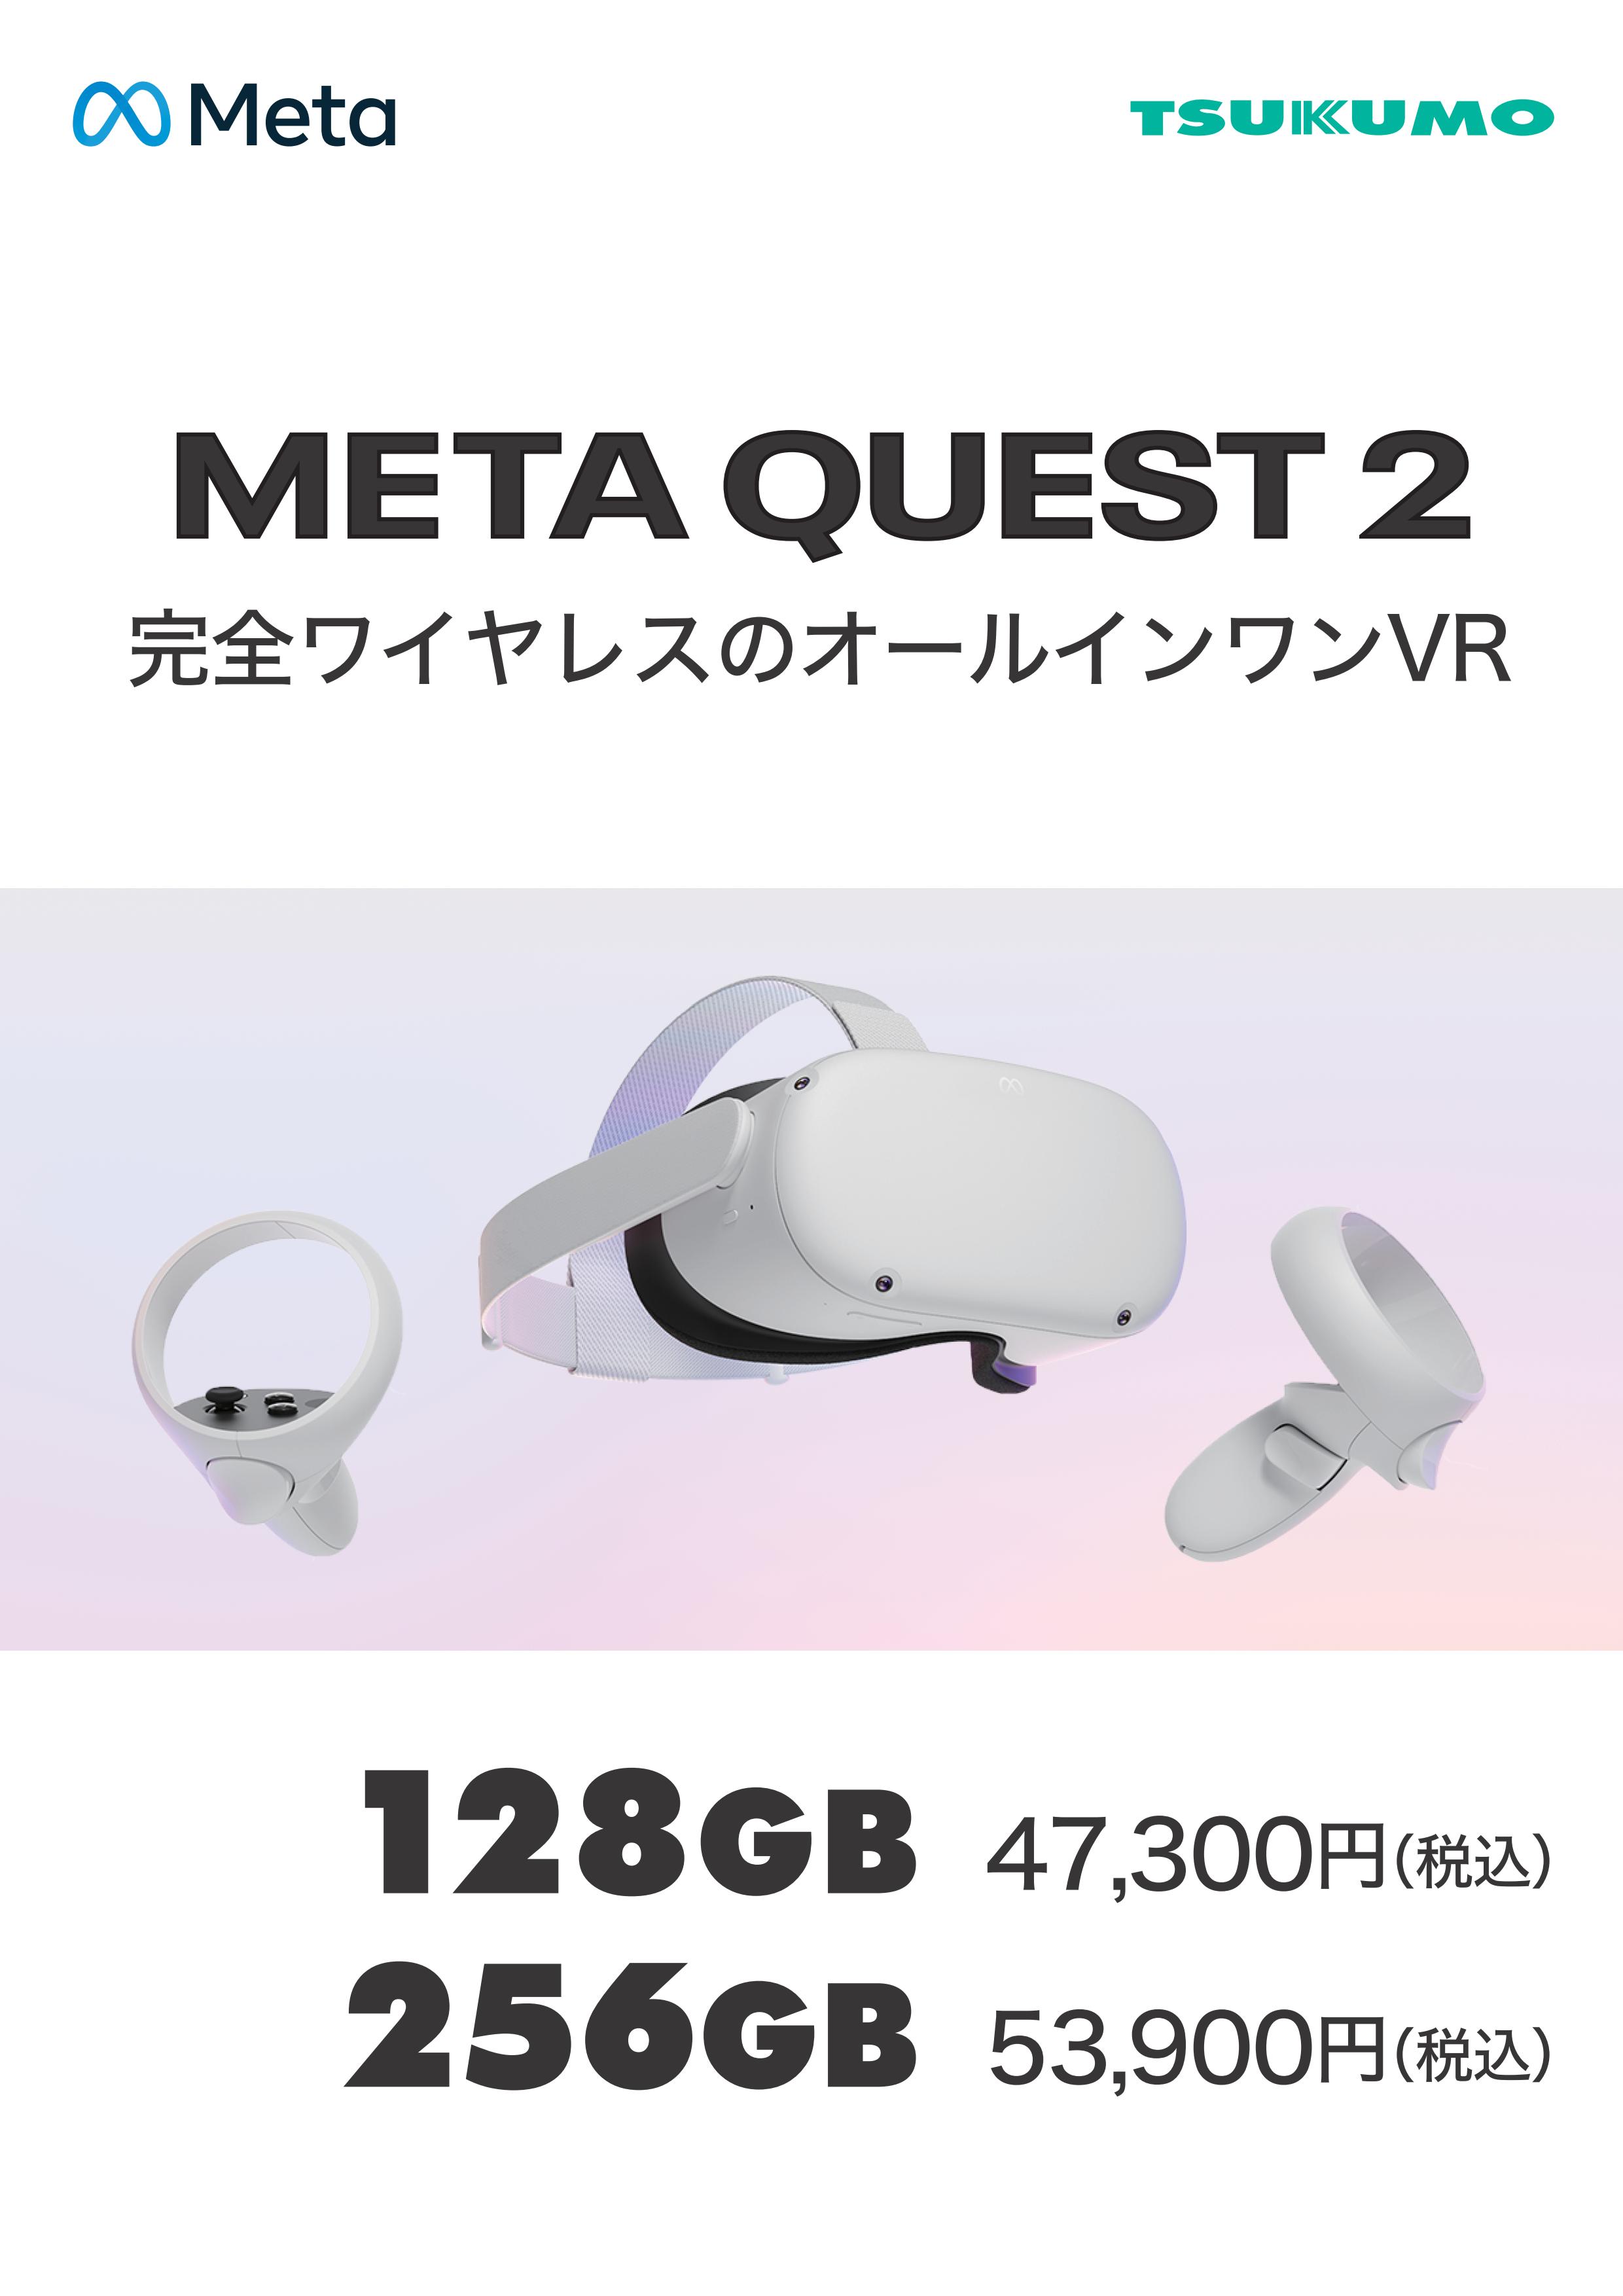 Meta Quest 2—ワイヤレスのオールインワンVRヘッドセット—128GB-